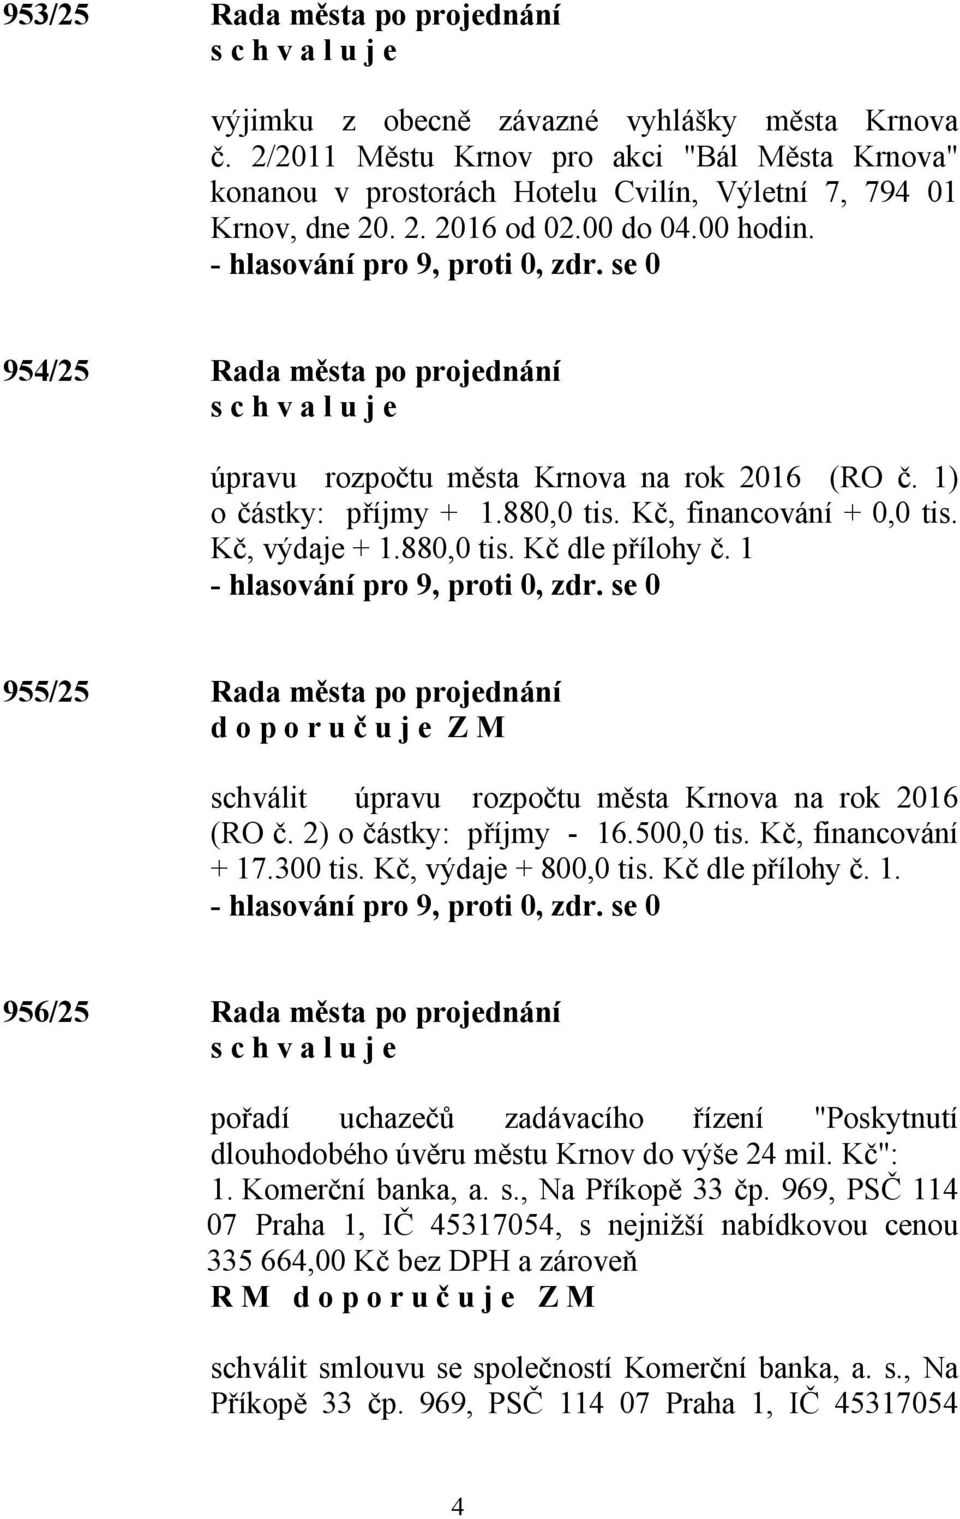 1 955/25 Rada města po projednání schválit úpravu rozpočtu města Krnova na rok 2016 (RO č. 2) o částky: příjmy - 16.500,0 tis. Kč, financování + 17.300 tis. Kč, výdaje + 800,0 tis. Kč dle přílohy č.